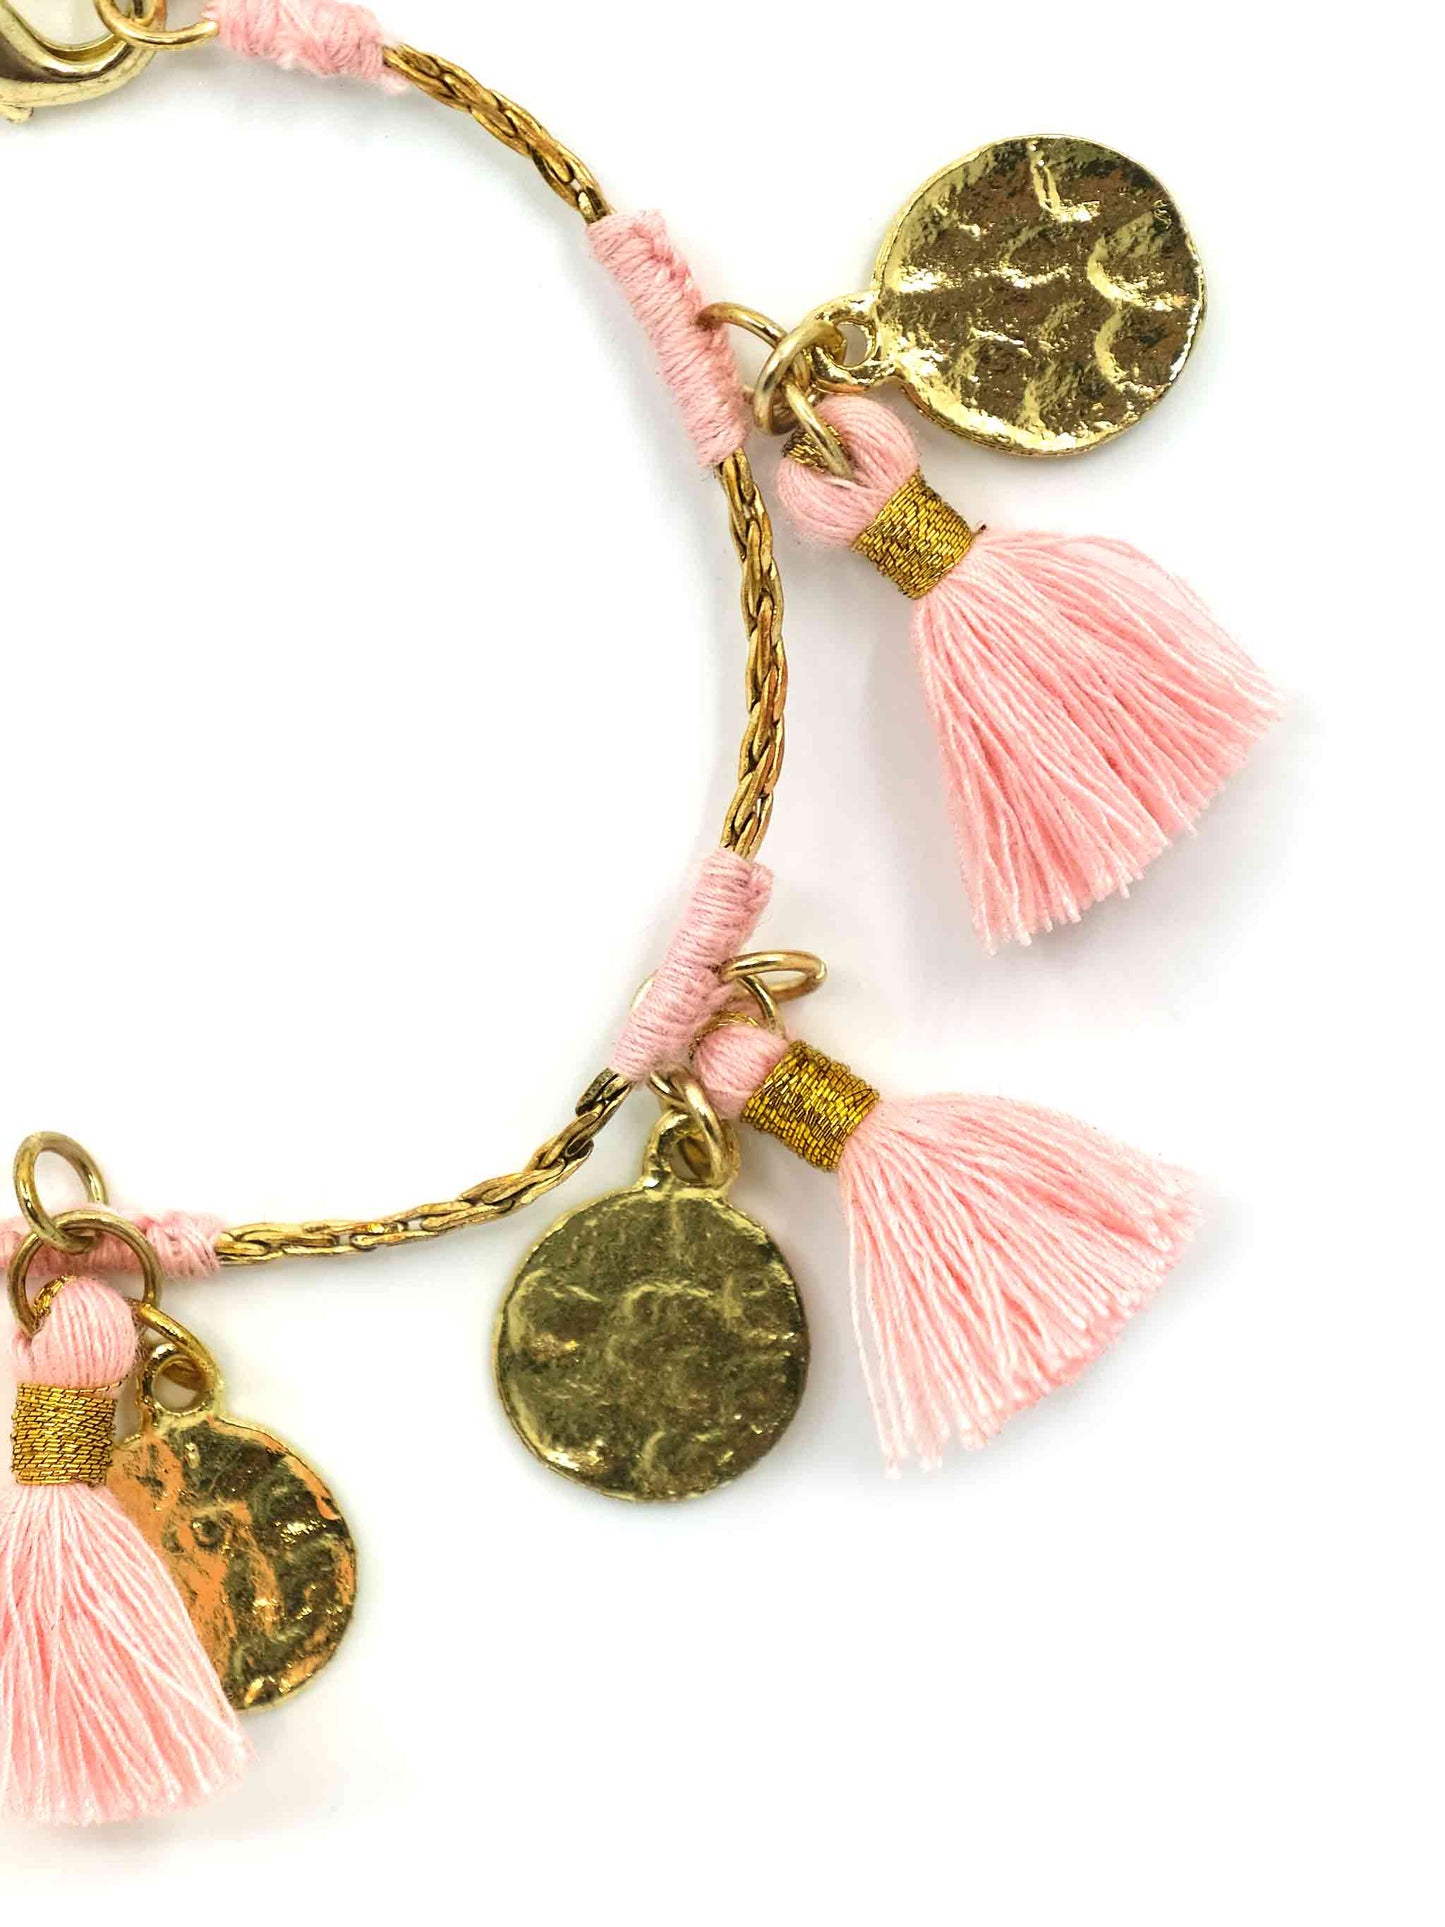 Boho Glam Fringe Gold Bracelet with Candy Pink Tassels